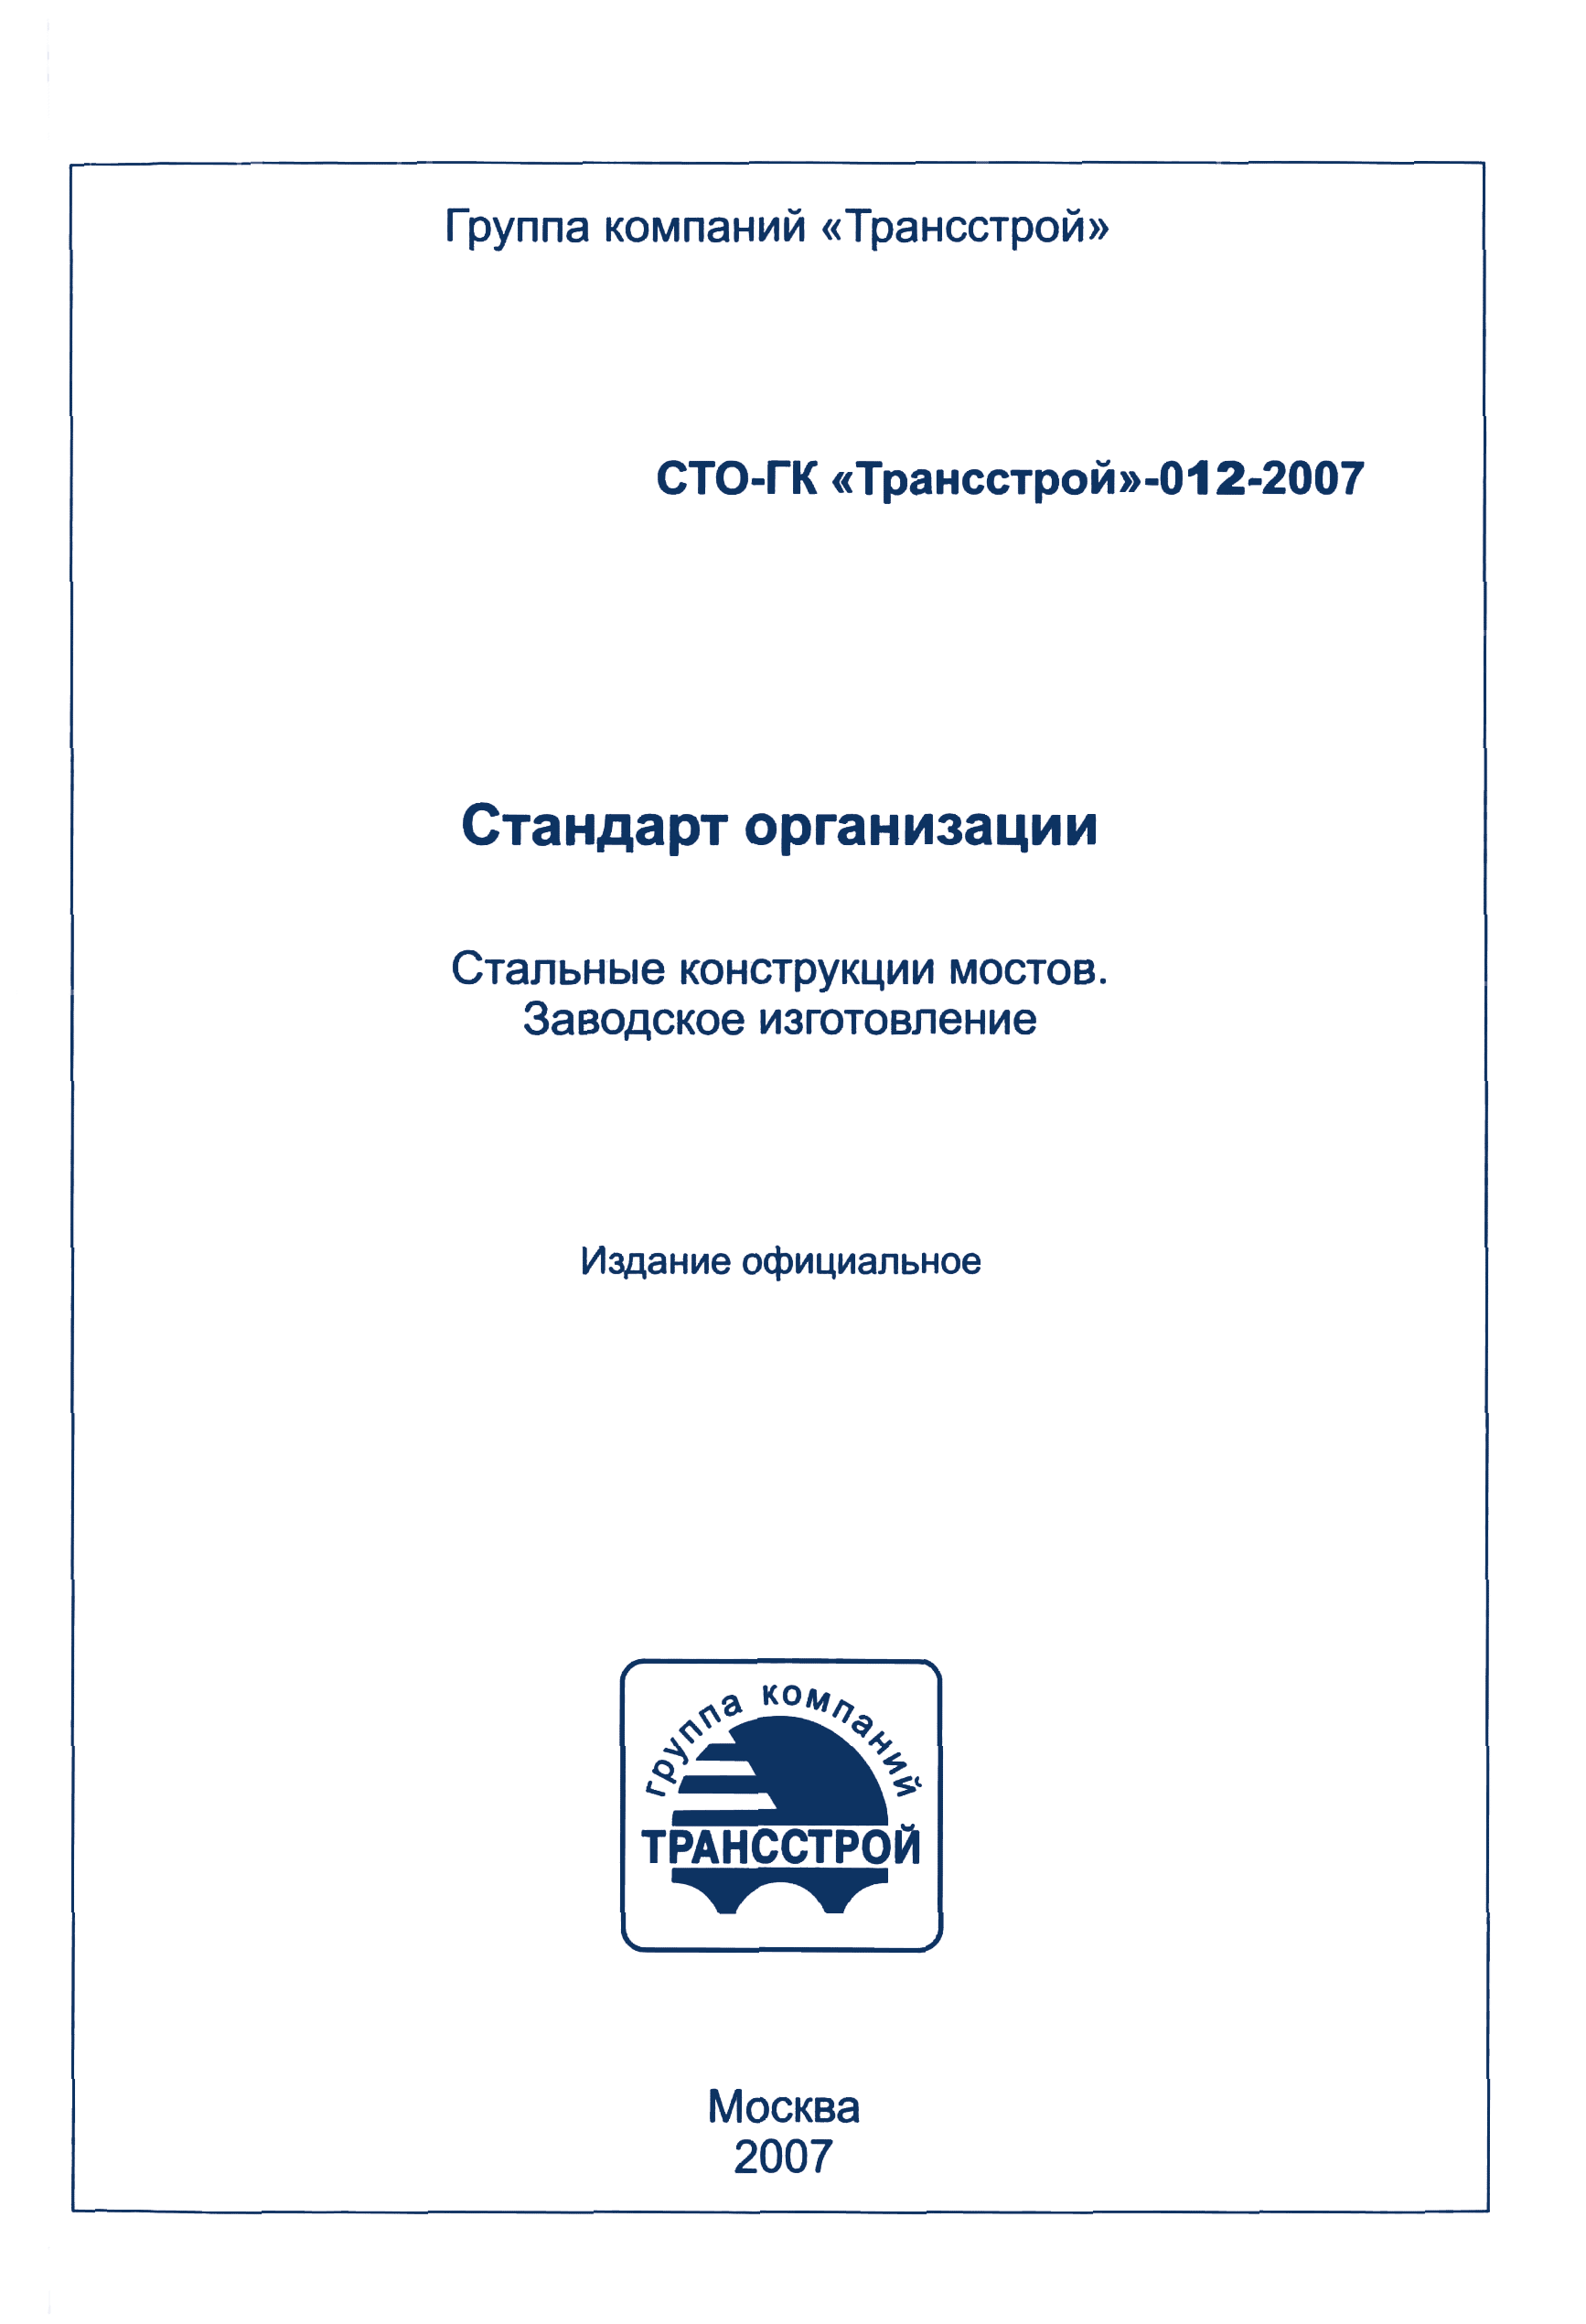 СТО-ГК "Трансстрой" 012-2007